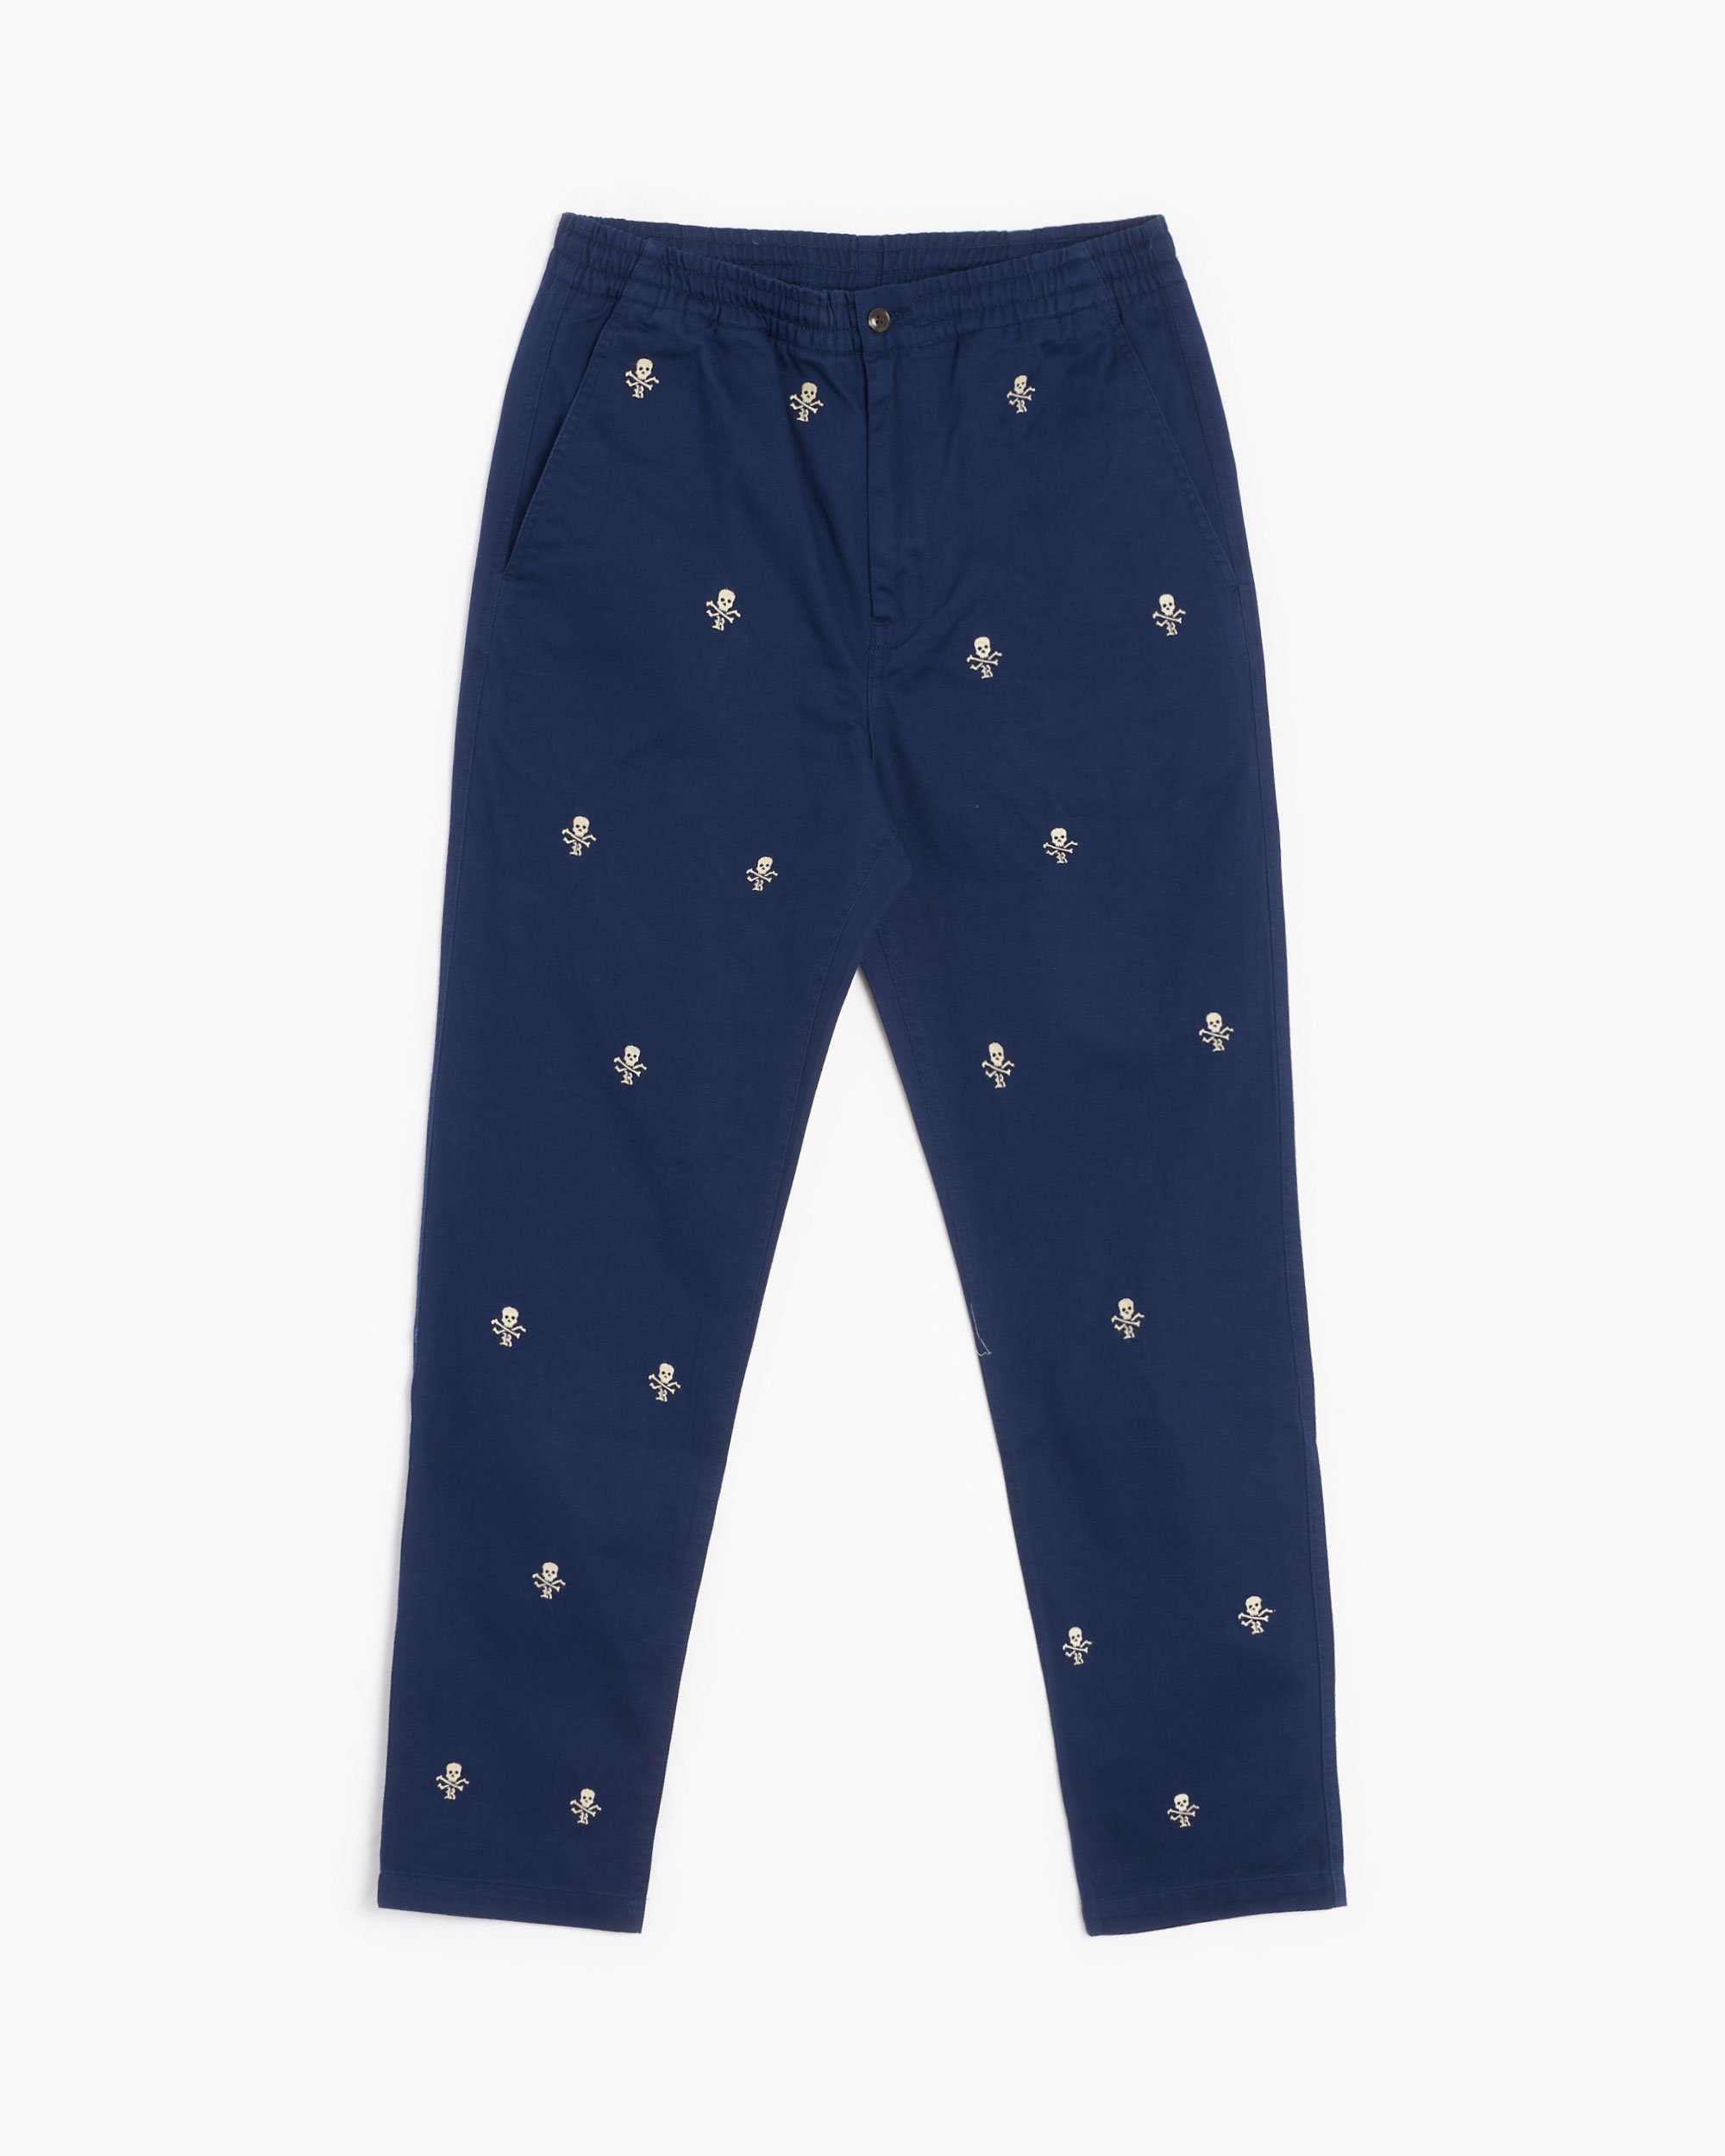 Polo Ralph Lauren Men's Classic Fit Prepster Pants Blue 710918106001